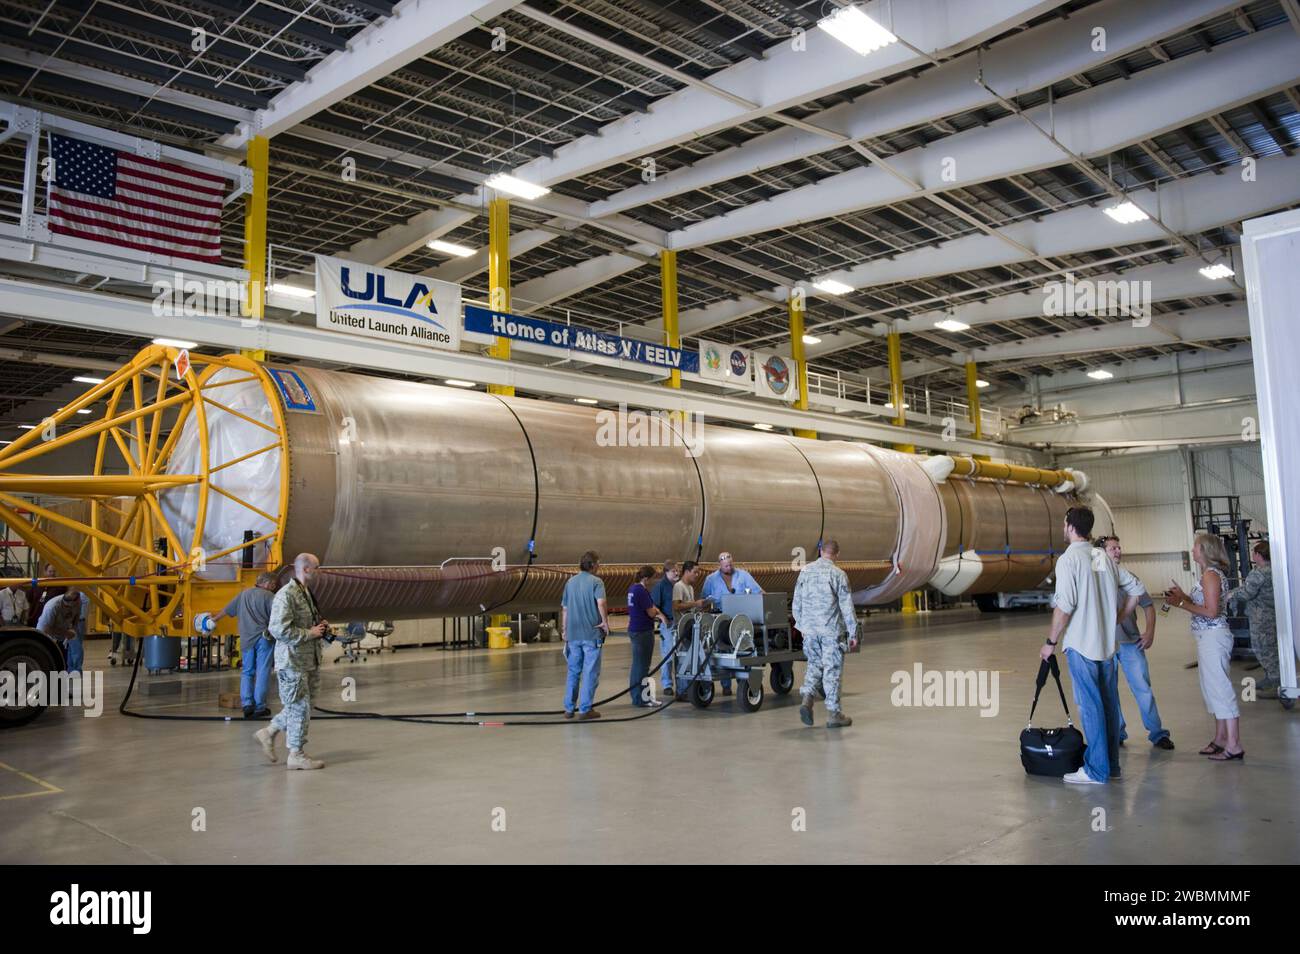 CAP CANAVERAL, Floride. -- les travailleurs de la United Launch Alliance (ULA) se préparent à traiter la première étape de la mission Atlas V pour la mission Mars Science Laboratory (MSL), nouvellement arrivée au Centre d'opérations de vol spatial Atlas sur la base aérienne de Cape Canaveral en Floride. Les composants de MSL comprennent un rover compact de la taille d'une voiture, Curiosity, qui dispose de 10 instruments scientifiques conçus pour rechercher des preuves pour savoir si Mars a eu des environnements favorables à la vie microbienne, y compris des ingrédients chimiques pour la vie. Le rover unique utilisera un laser pour regarder à l'intérieur des roches et libérer ses gaz de sorte que le rover sp Banque D'Images